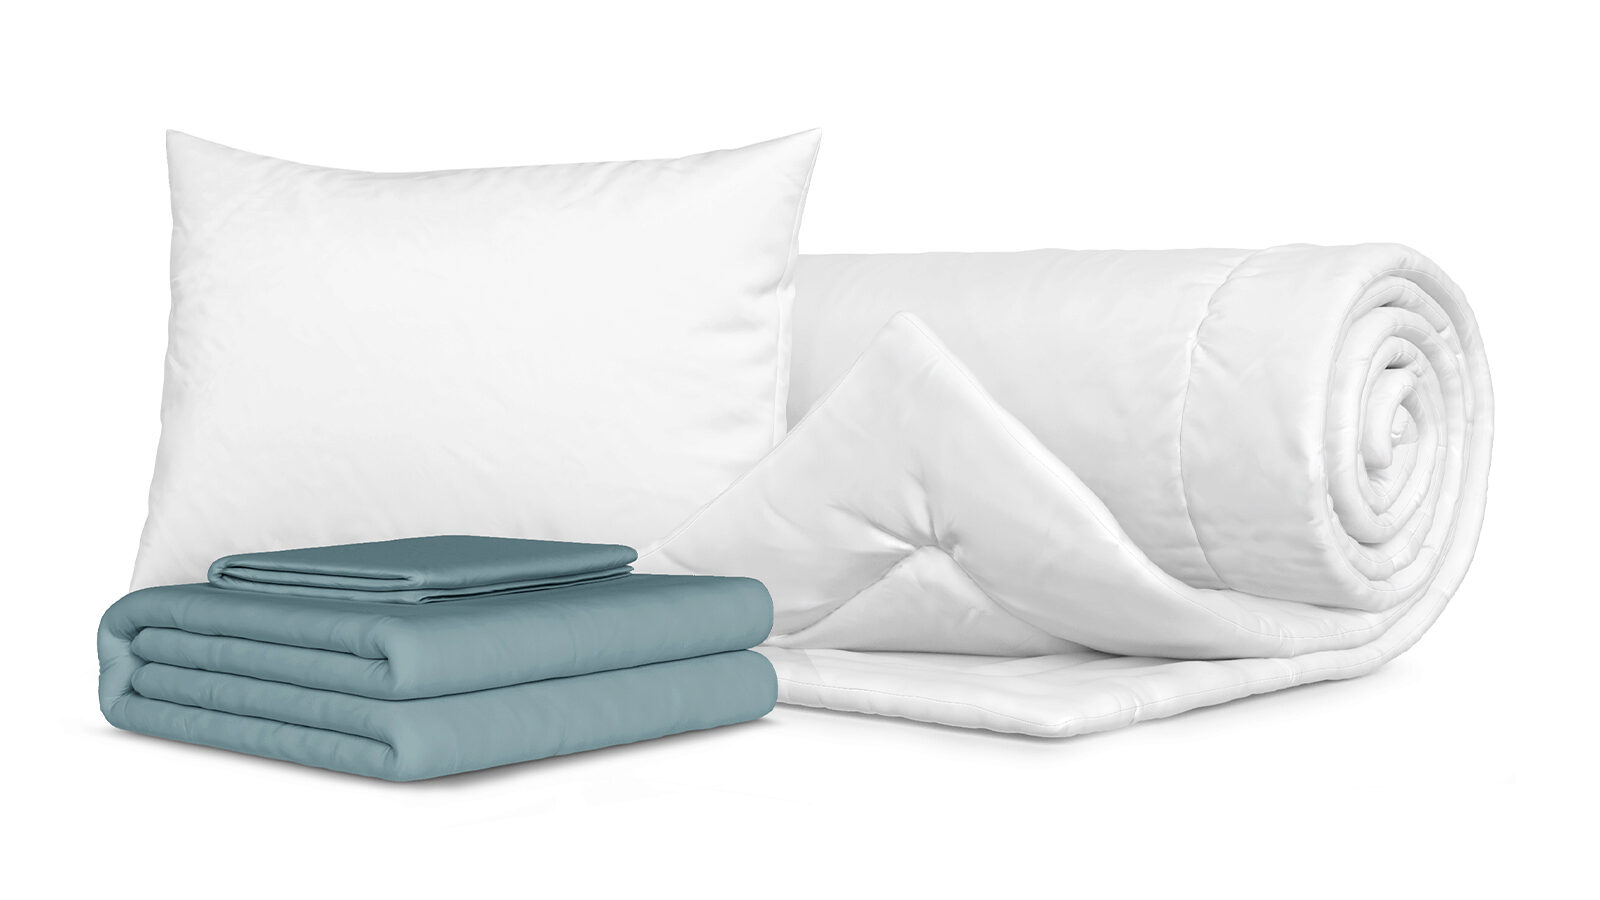 Комплект Одеяло Beat + Подушка Sky + Комплект постельного белья Comfort Cotton, цвет: Серо-голубой smartsleep подушка smart comfort детская